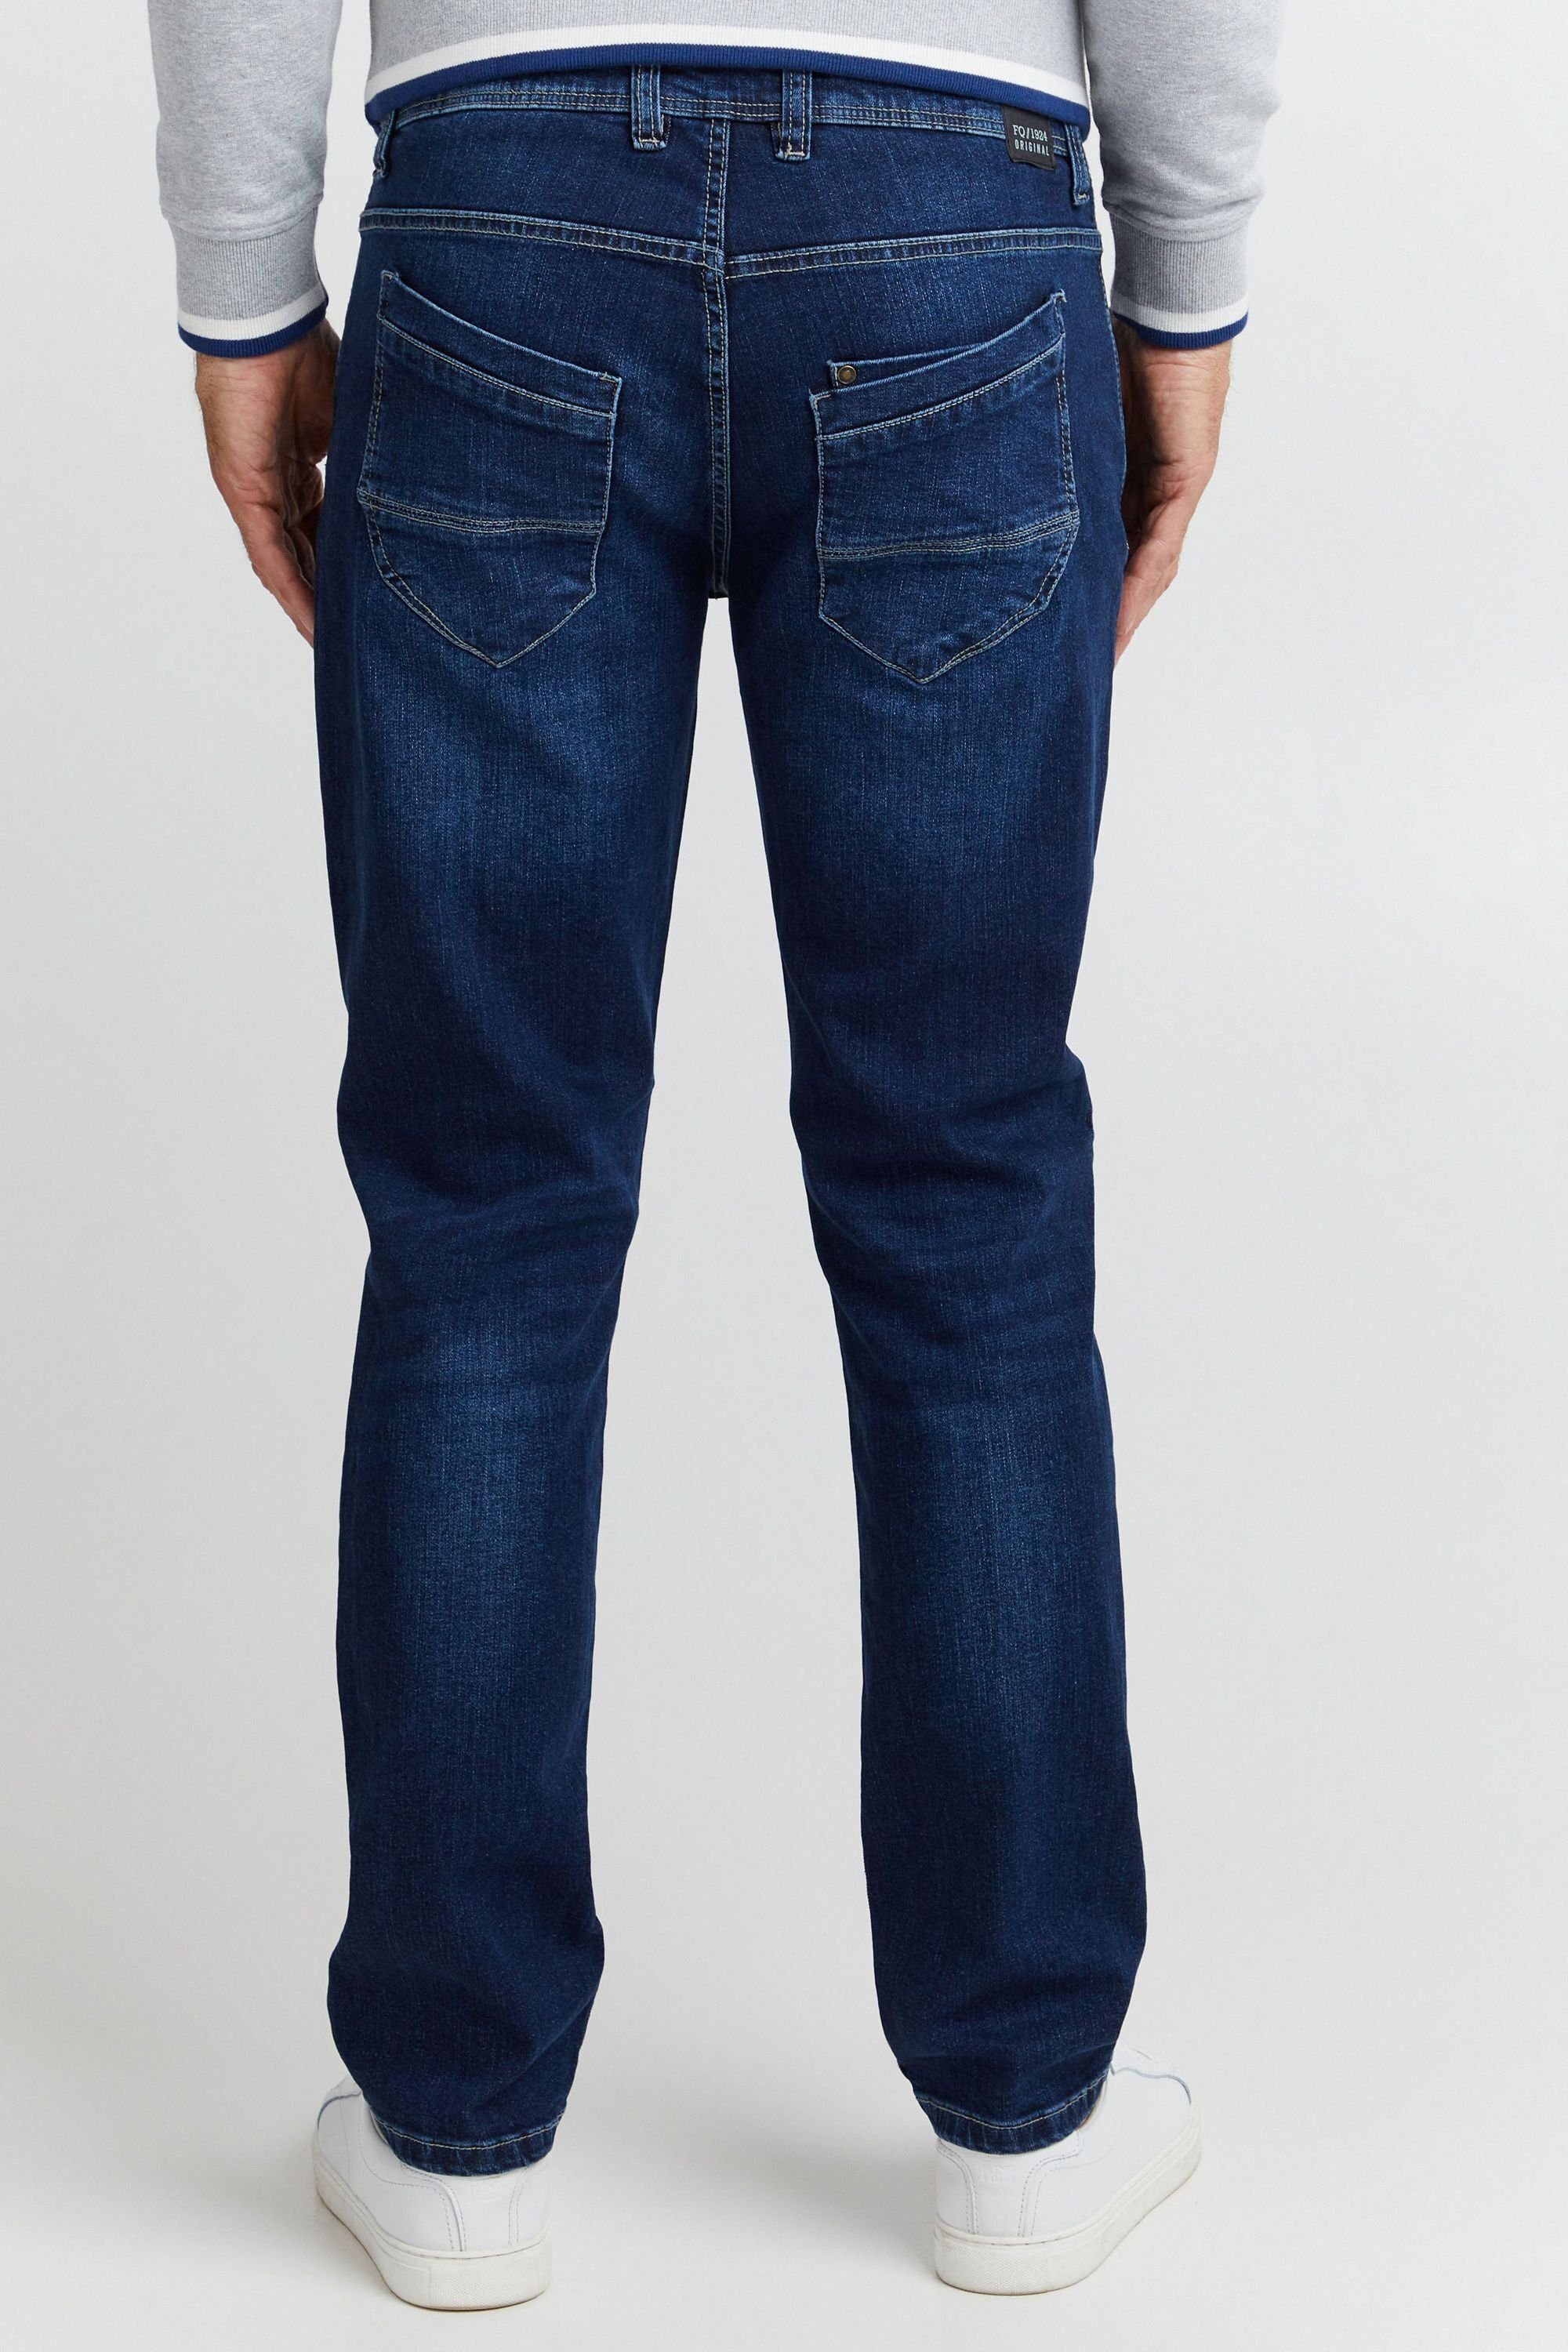 5-Pocket-Jeans FQ1924 Denim FQ1924 blue dark FQRoman